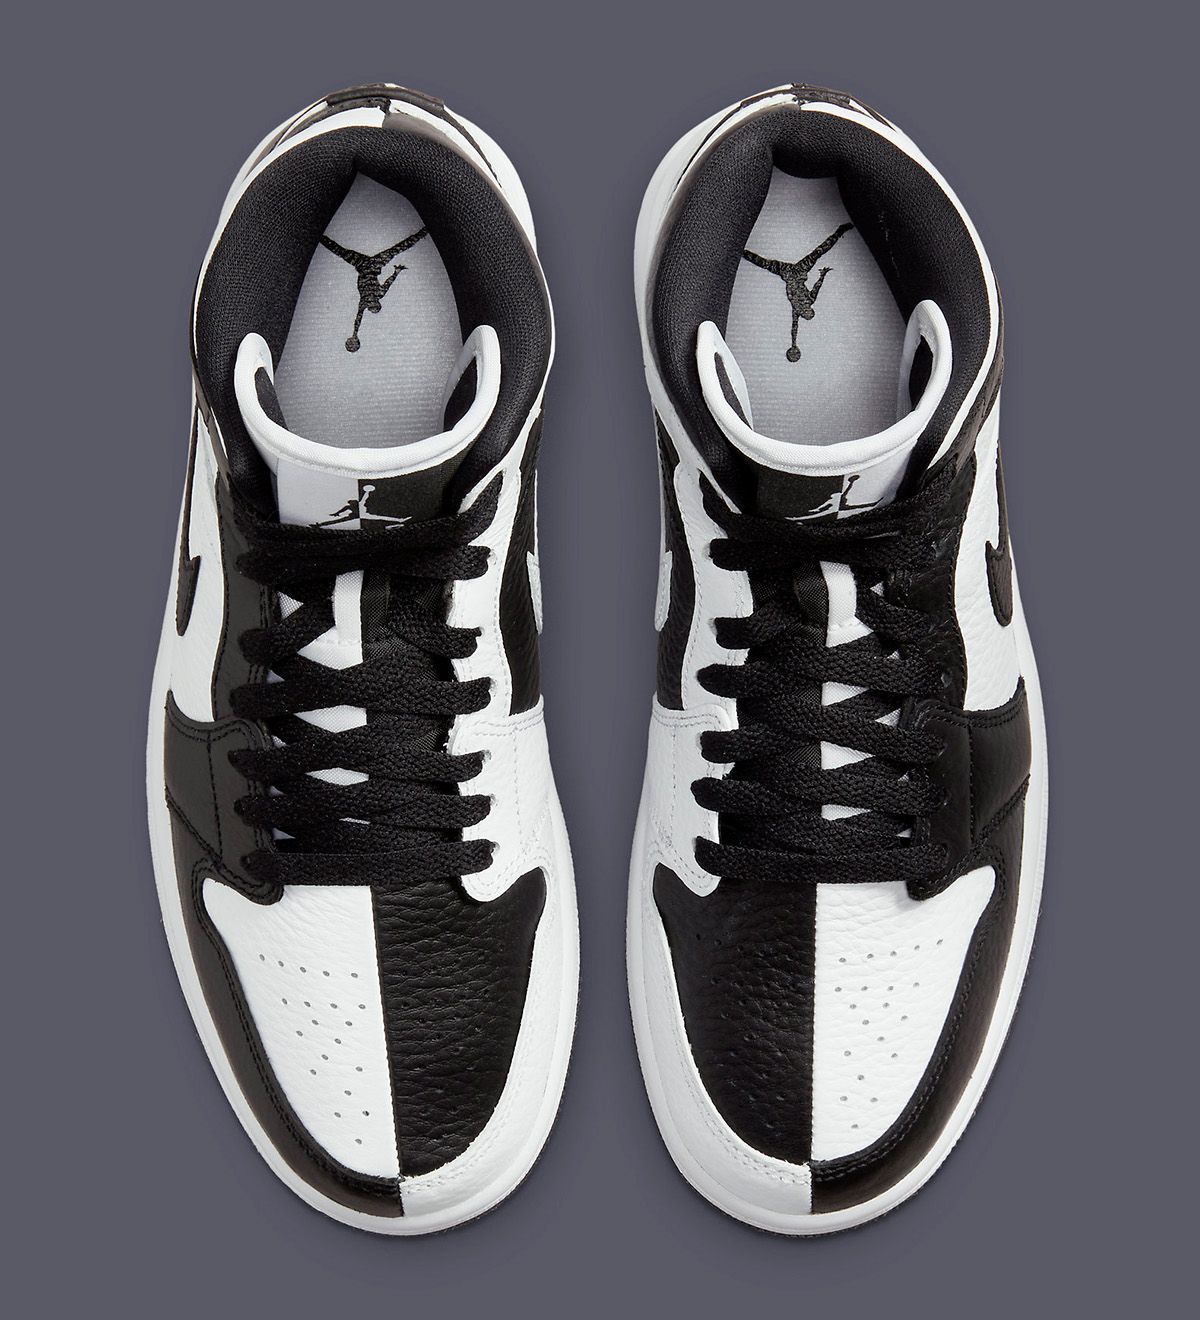 Where to Buy the Air Jordan 1 Mid "Split" (Black/White) | HOUSE OF